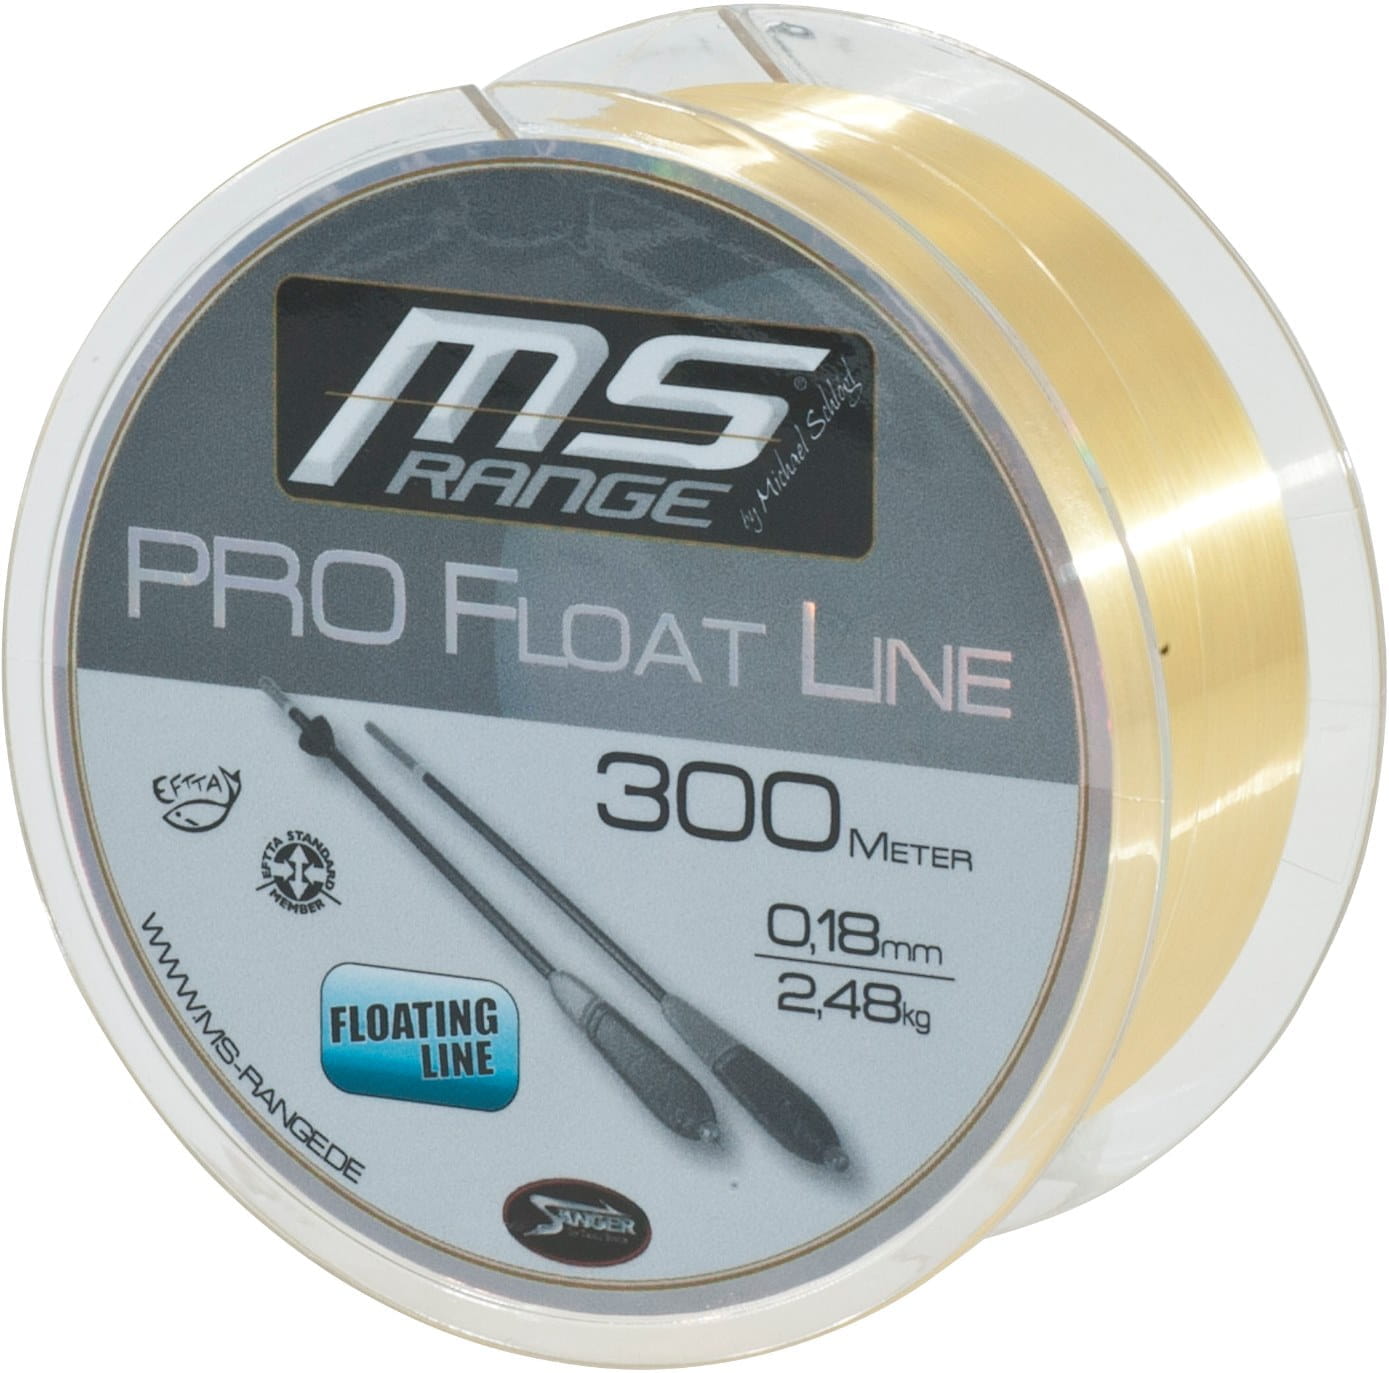 MS Range Pro Float Line 300m